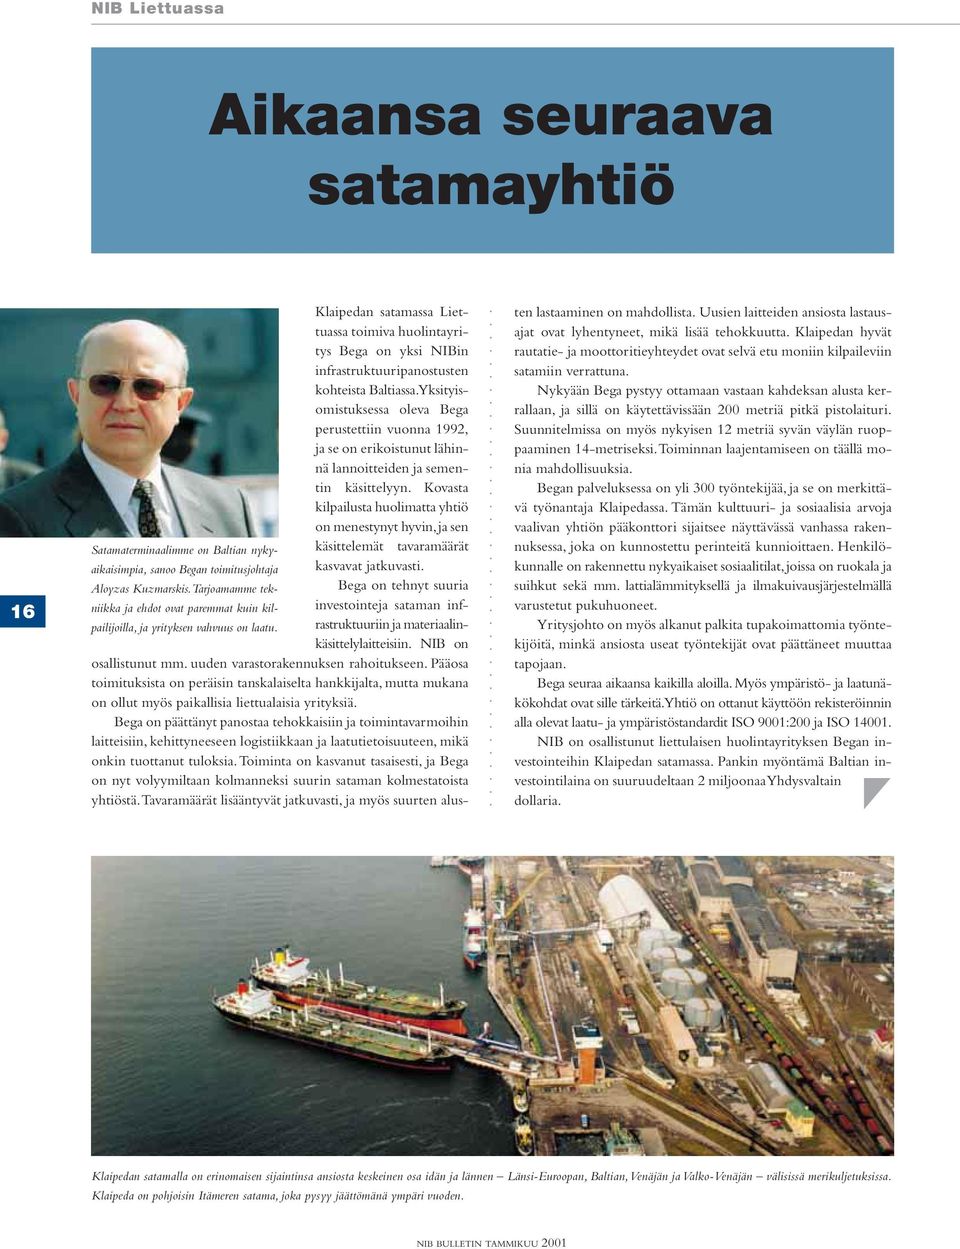 Kovasta kilpailusta huolimatta yhtiö on menestynyt hyvin, ja sen Satamaterminaalimme on Baltian nykyaikaisimpia, sanoo Began toimitusjohtaja kasvavat jatkuvasti.